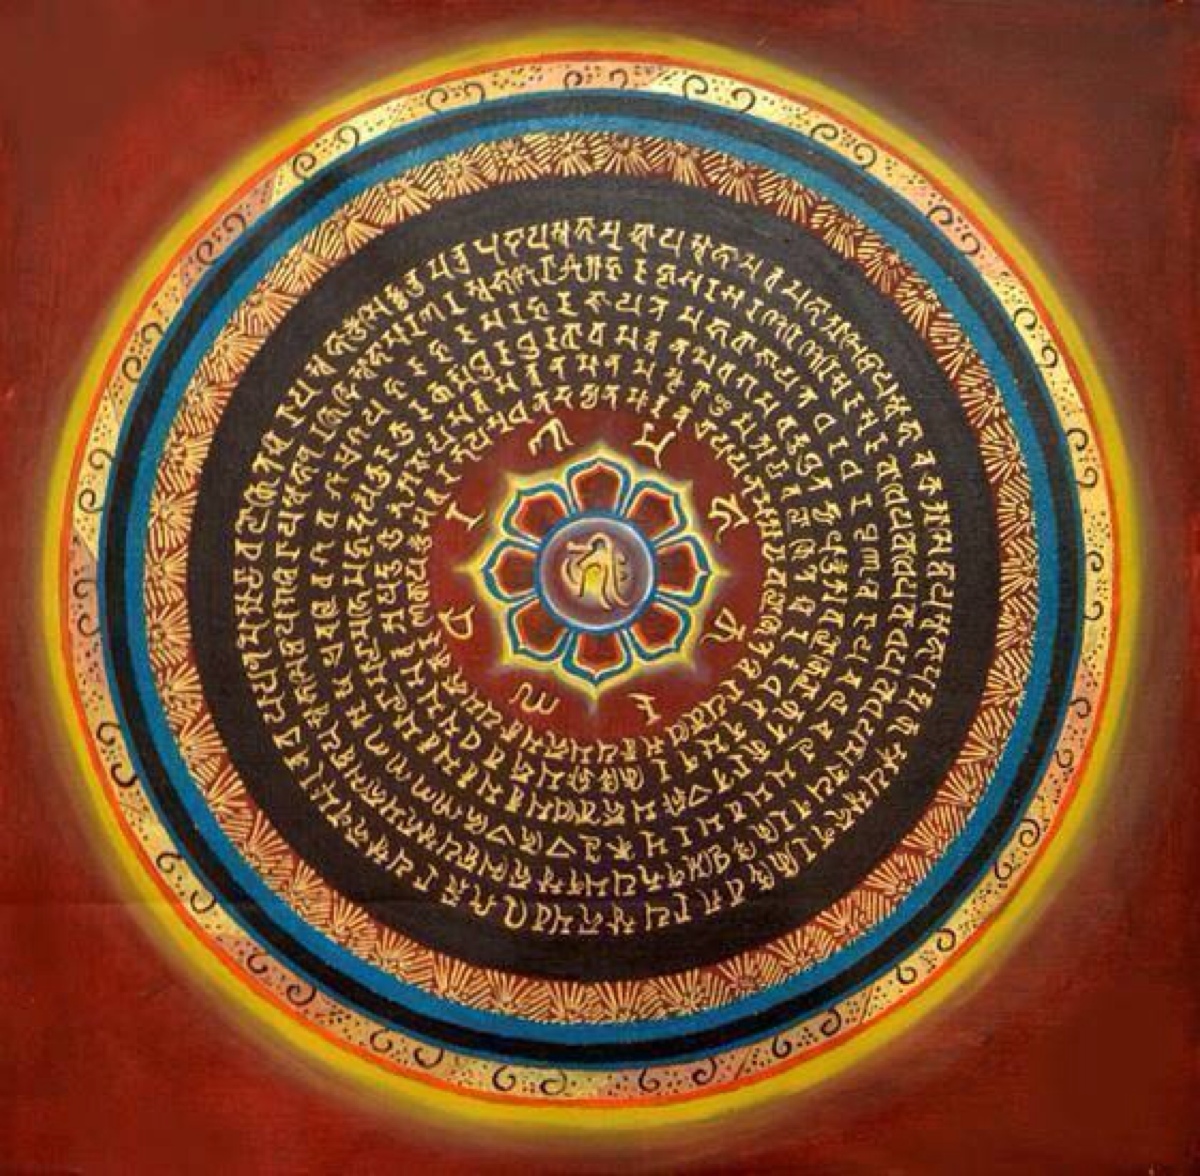 轮是佛教之中常用的,像佛宣讲法也称为"转法轮",就是说佛法能像轮子一